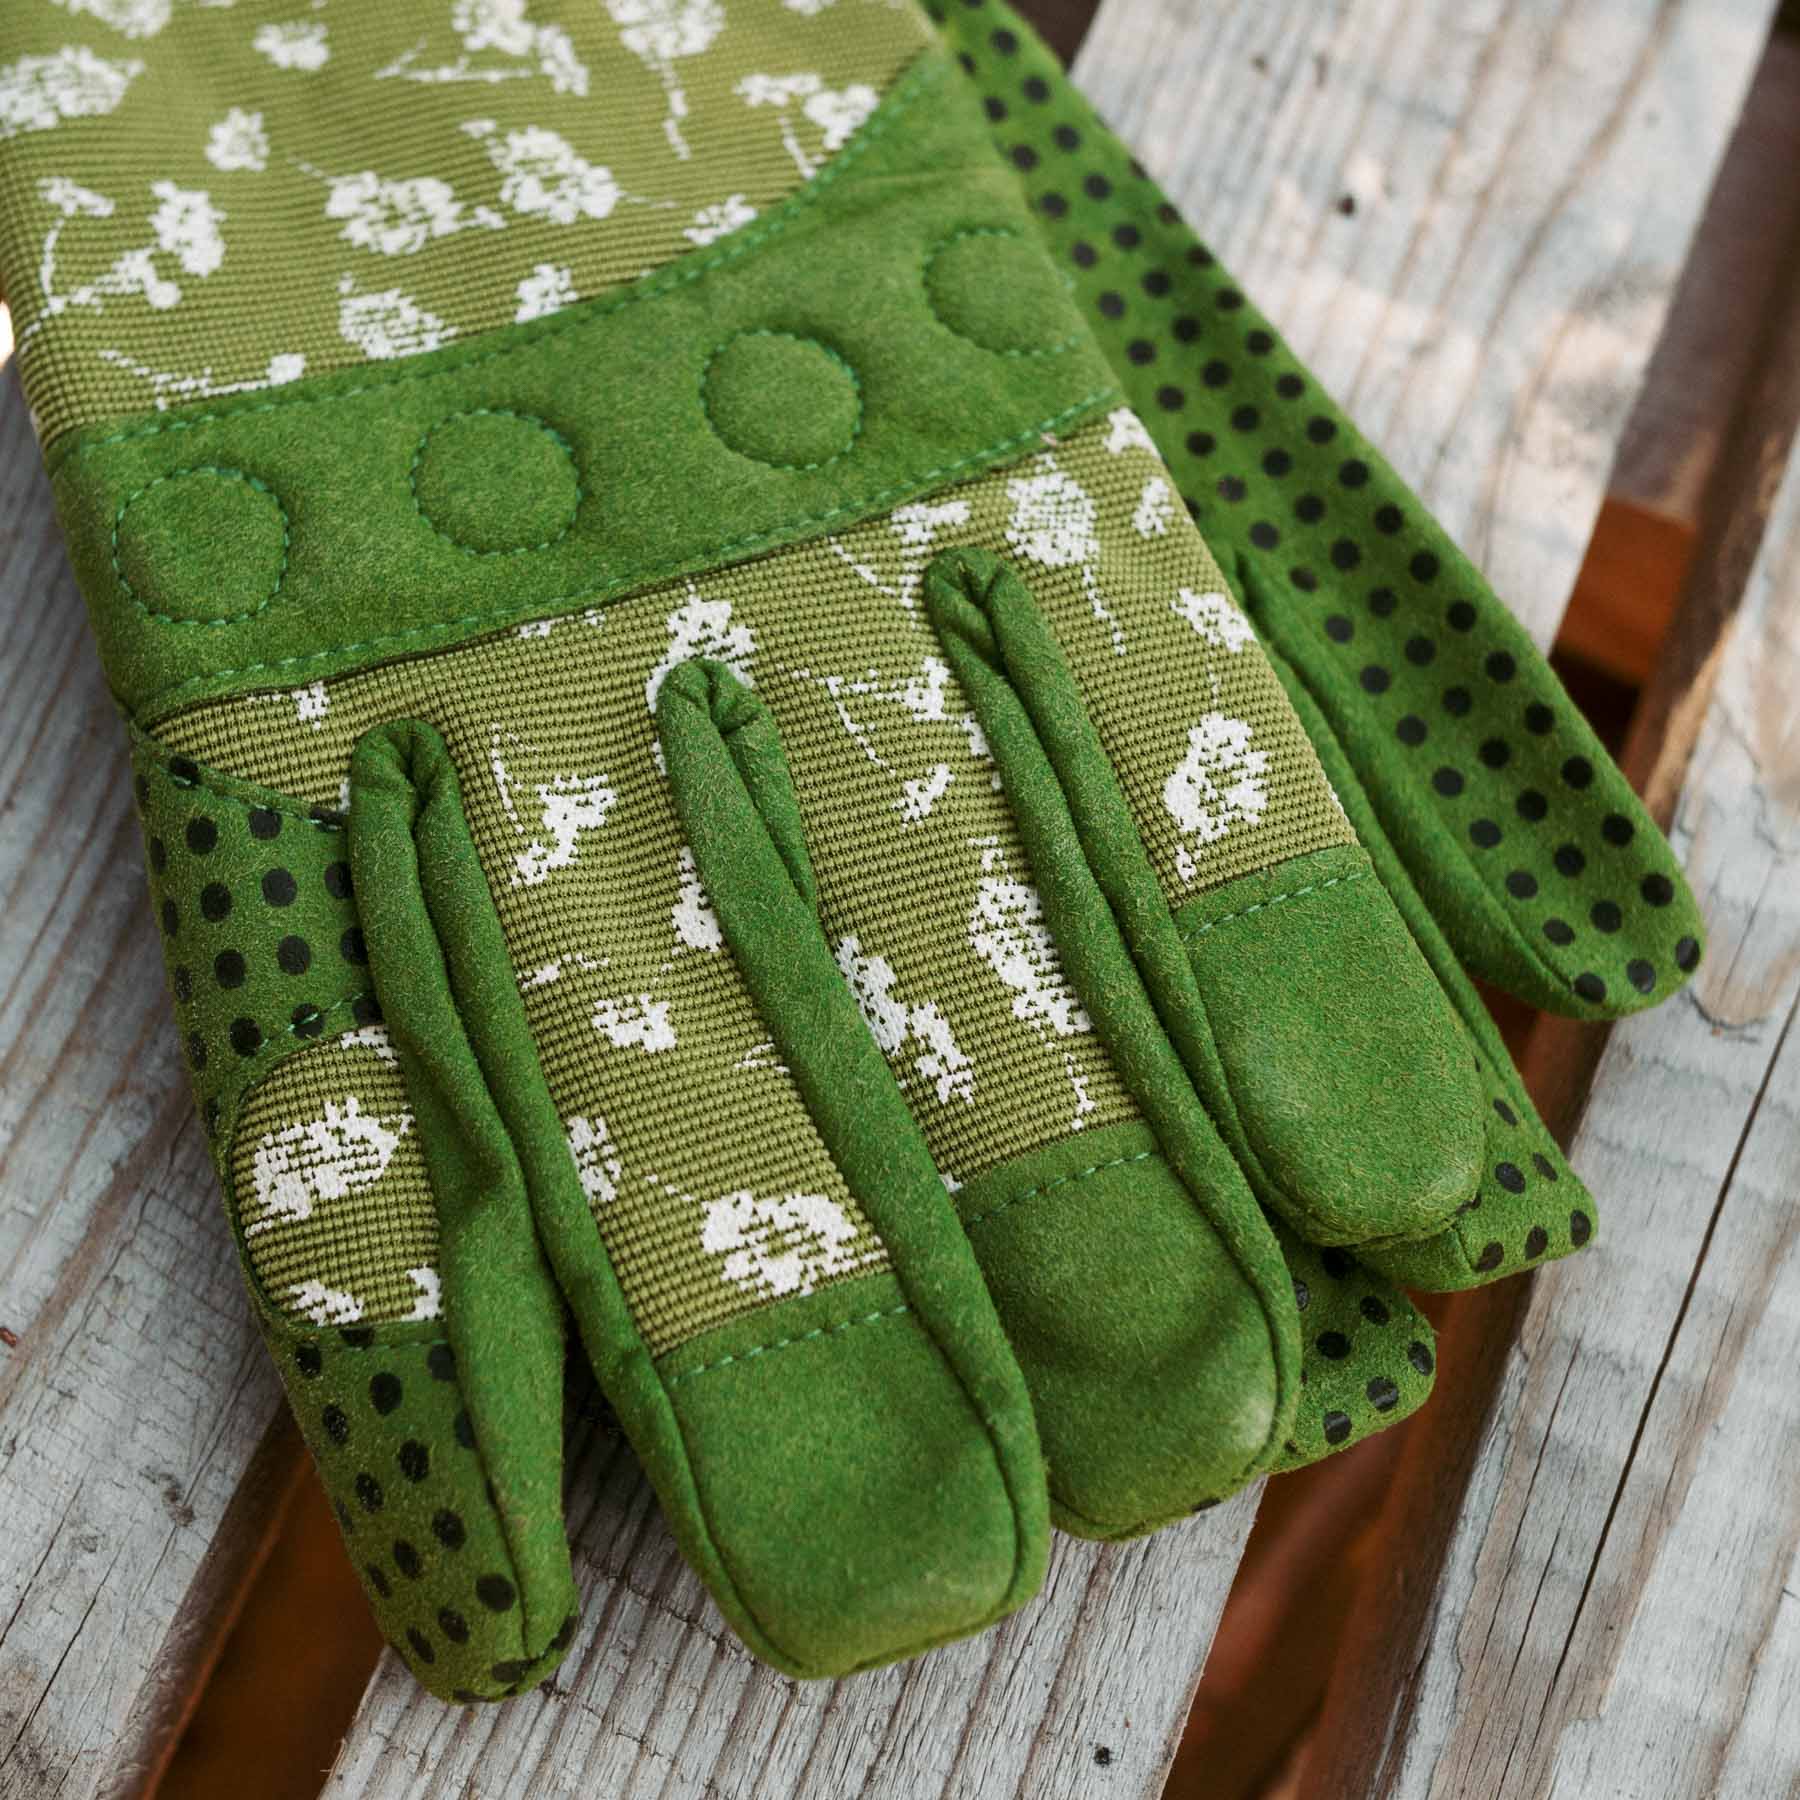 Grip handsker i grøn